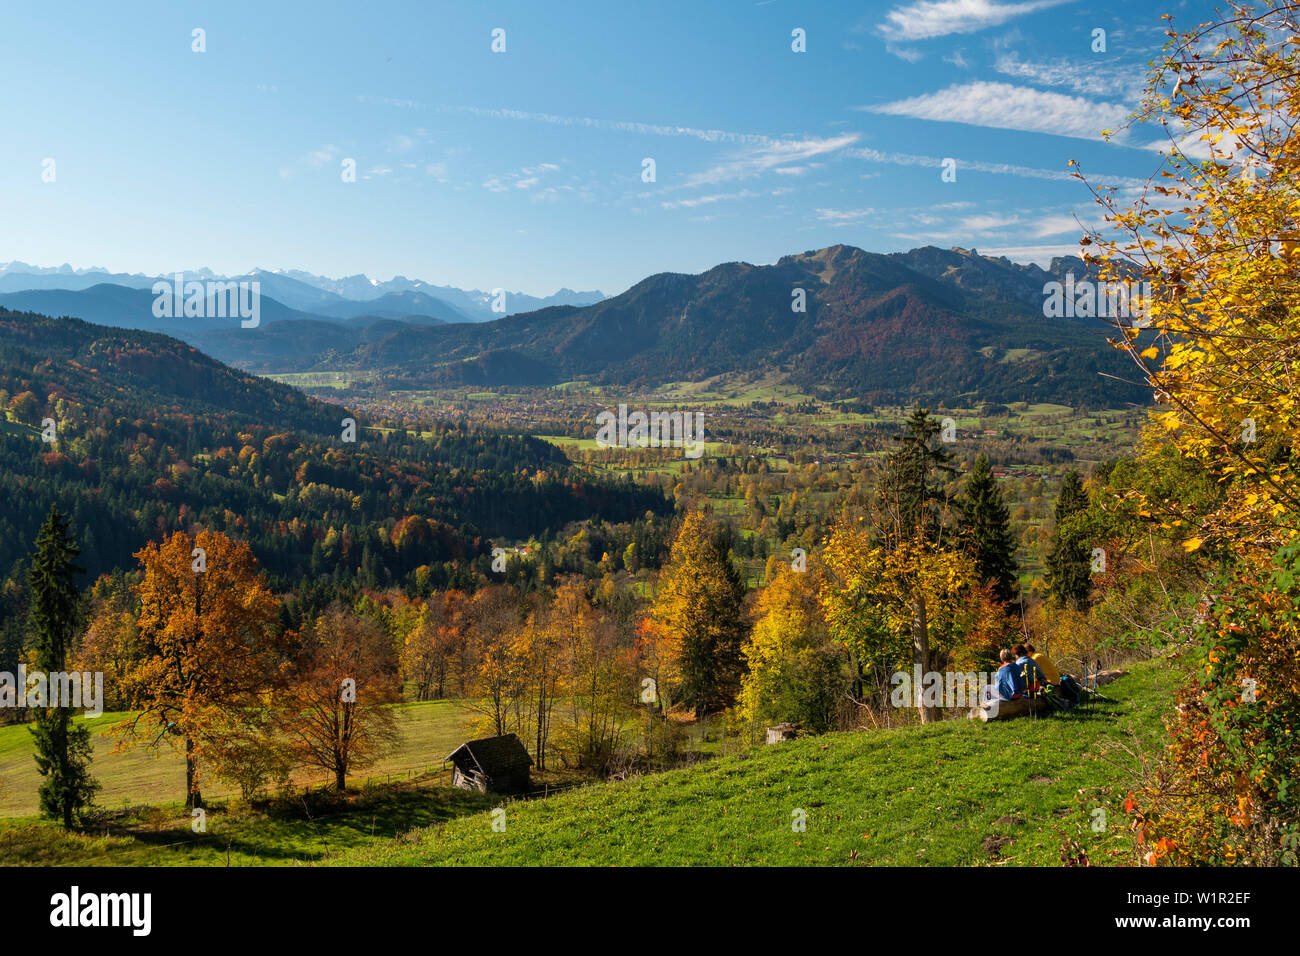 Vue depuis le versant sud de la montagne de la vallée de l'Isar dans Sonntraten, à Brauneck et de Karwendel, Alpes, Upper Bavaria, Germany, Europe Banque D'Images